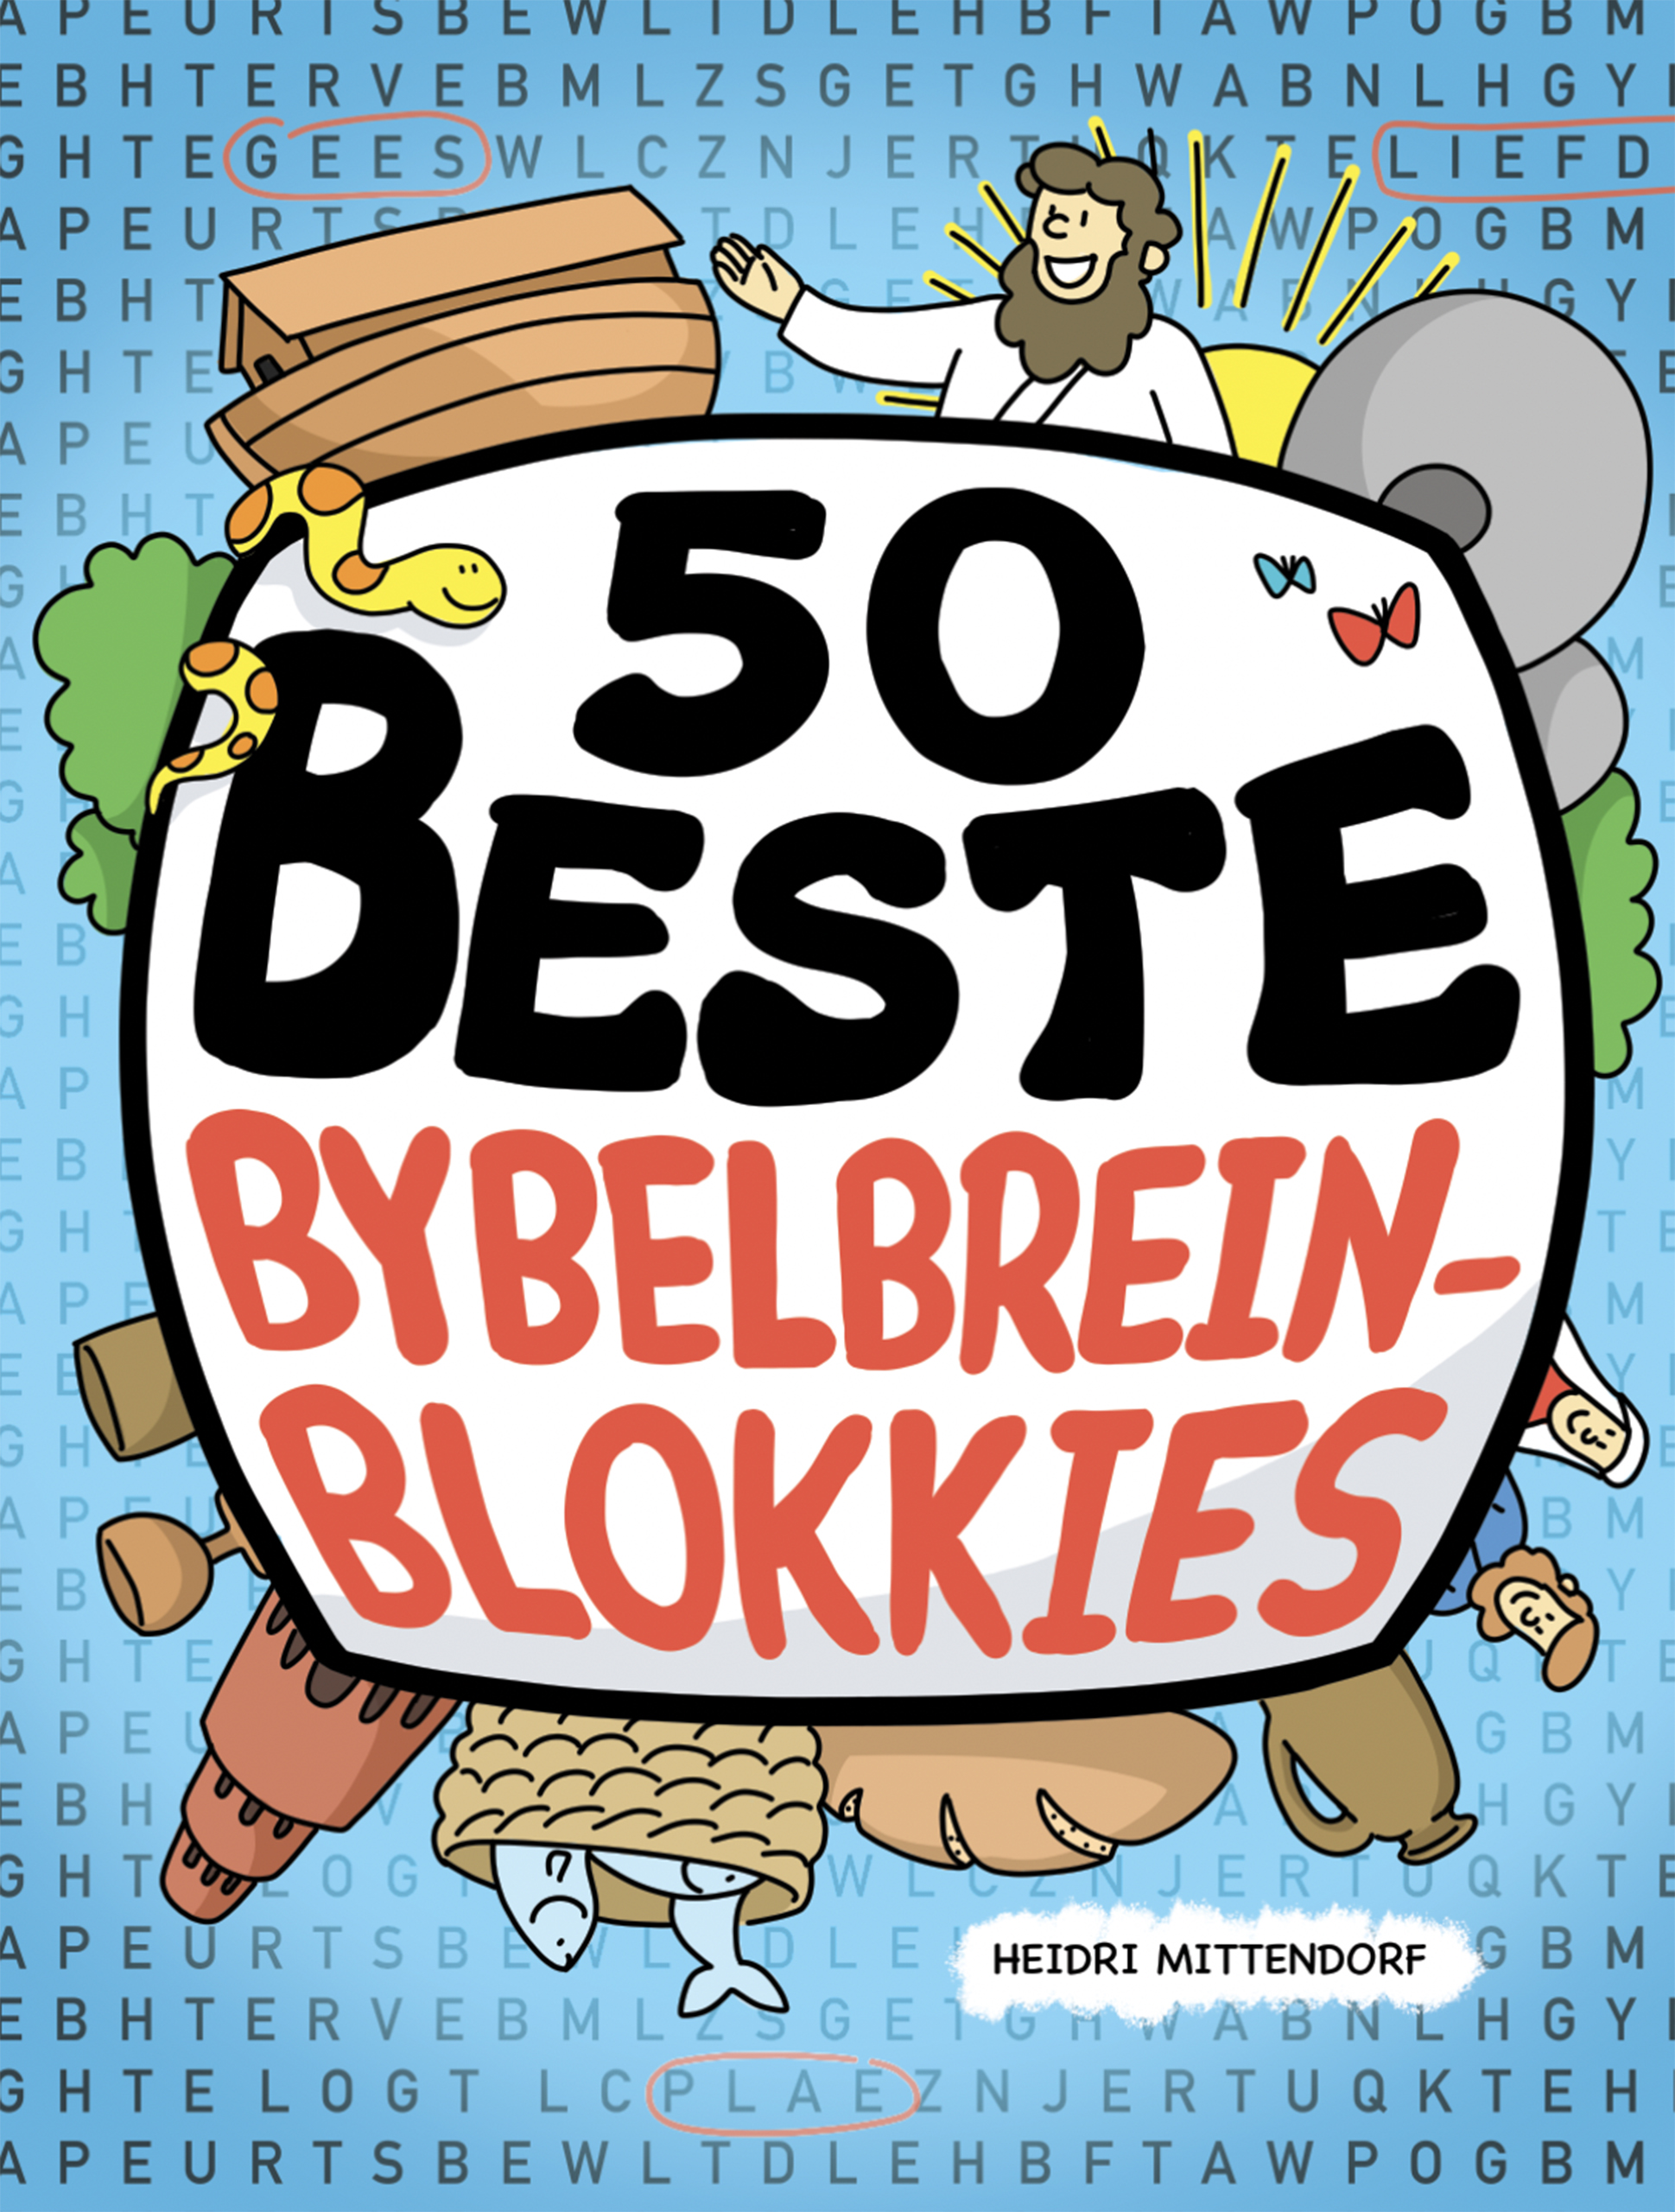 Picture of 50 Beste Bybelbreinblokkies